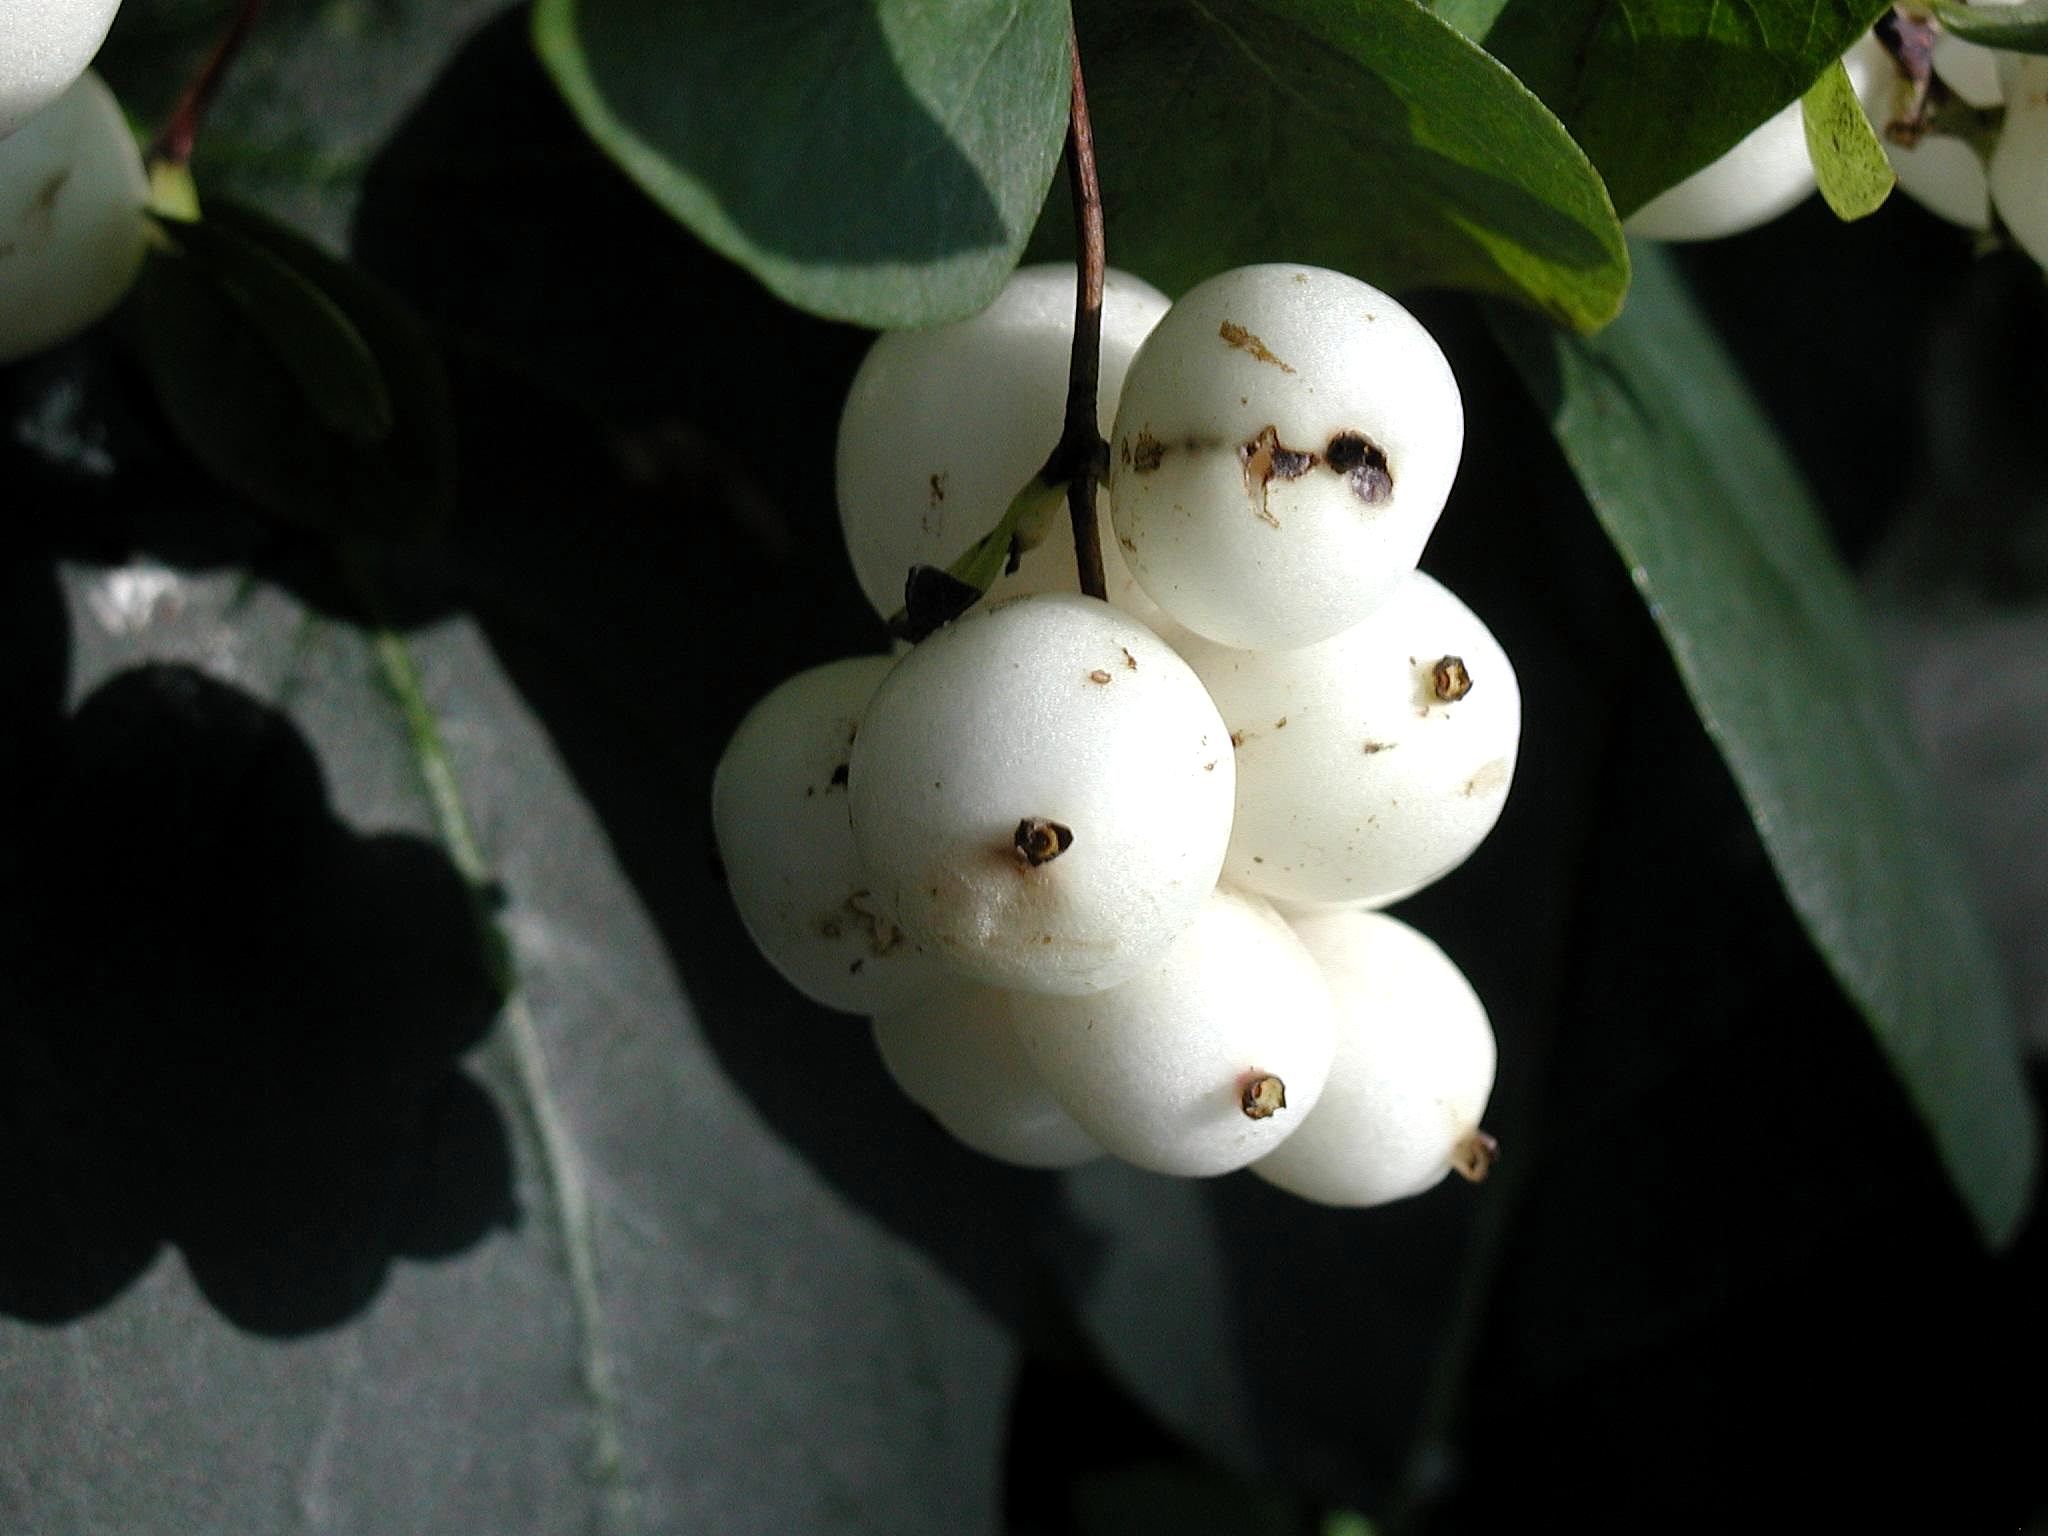 File:White fruit.jpg - Wikimedia Commons